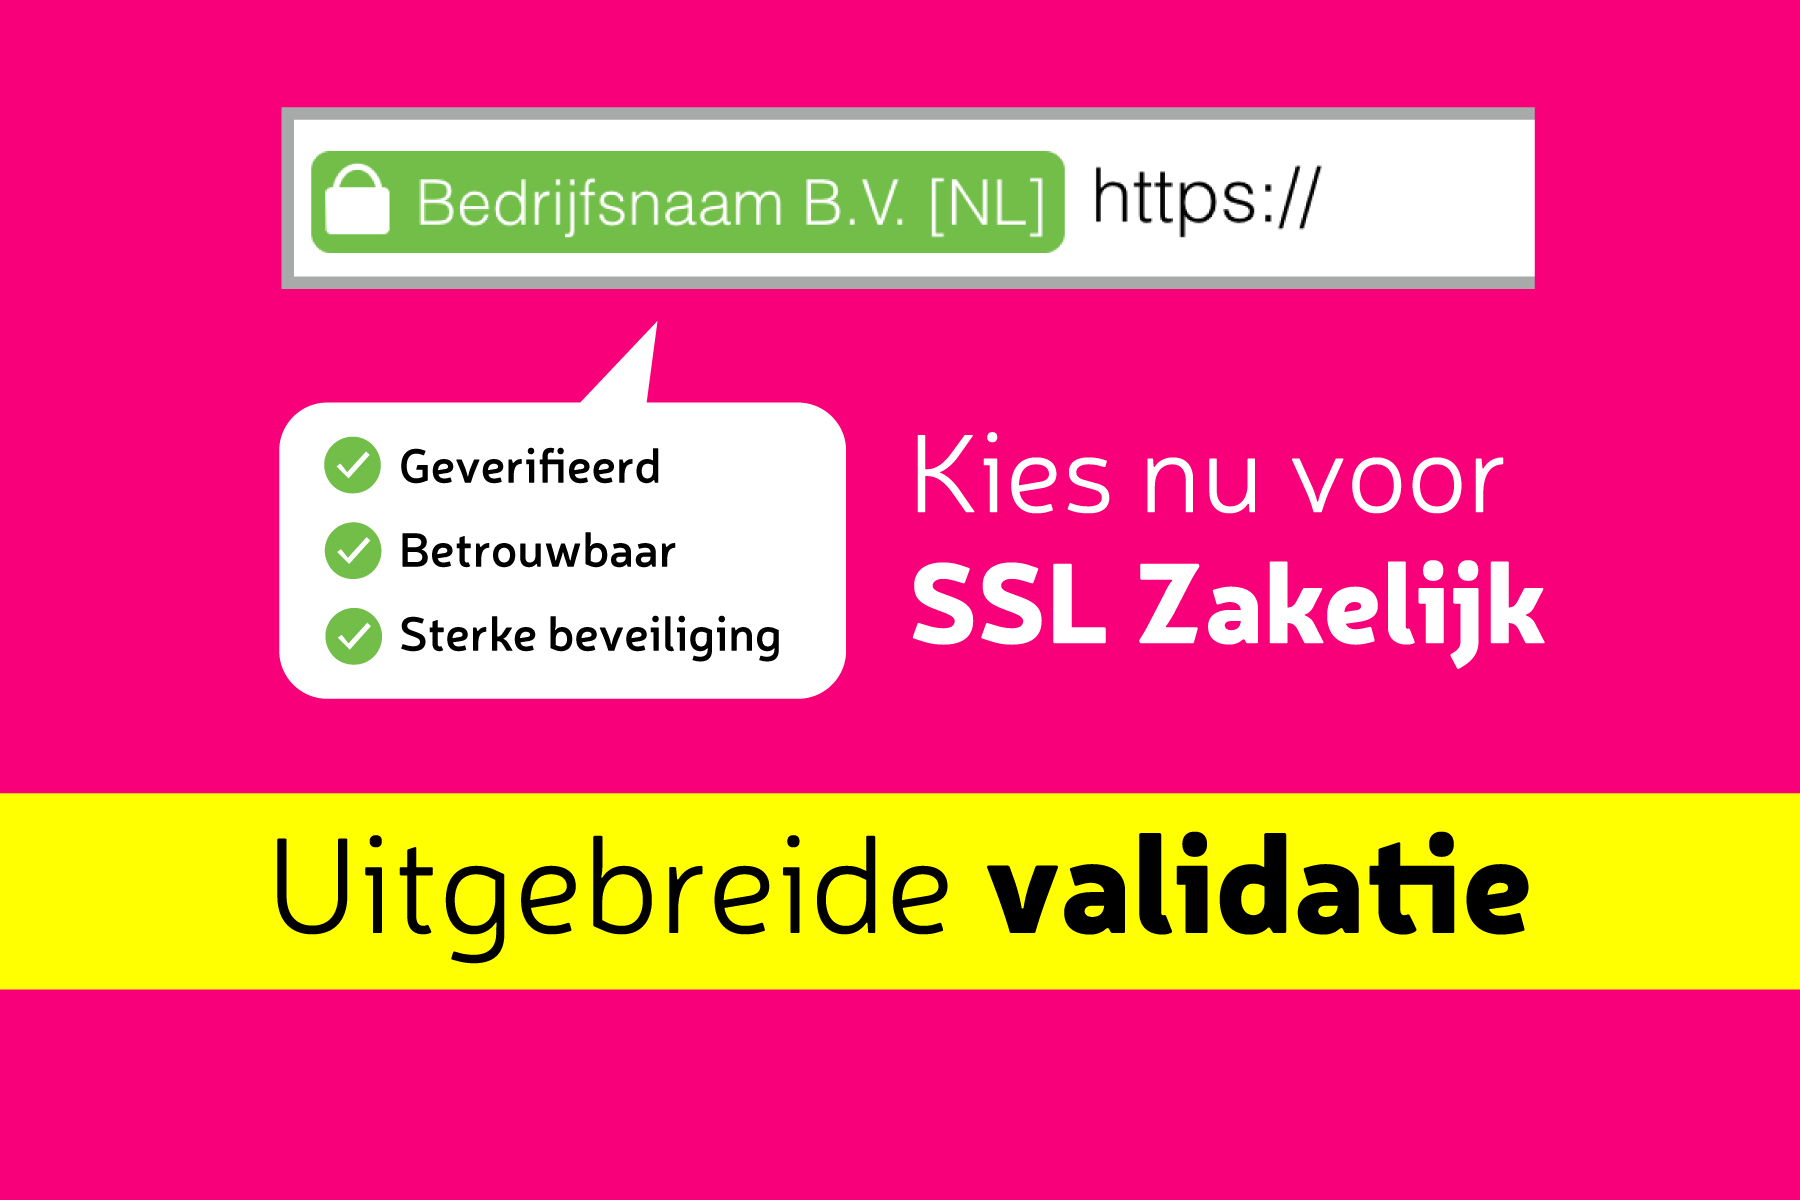 SSL Zakelijk